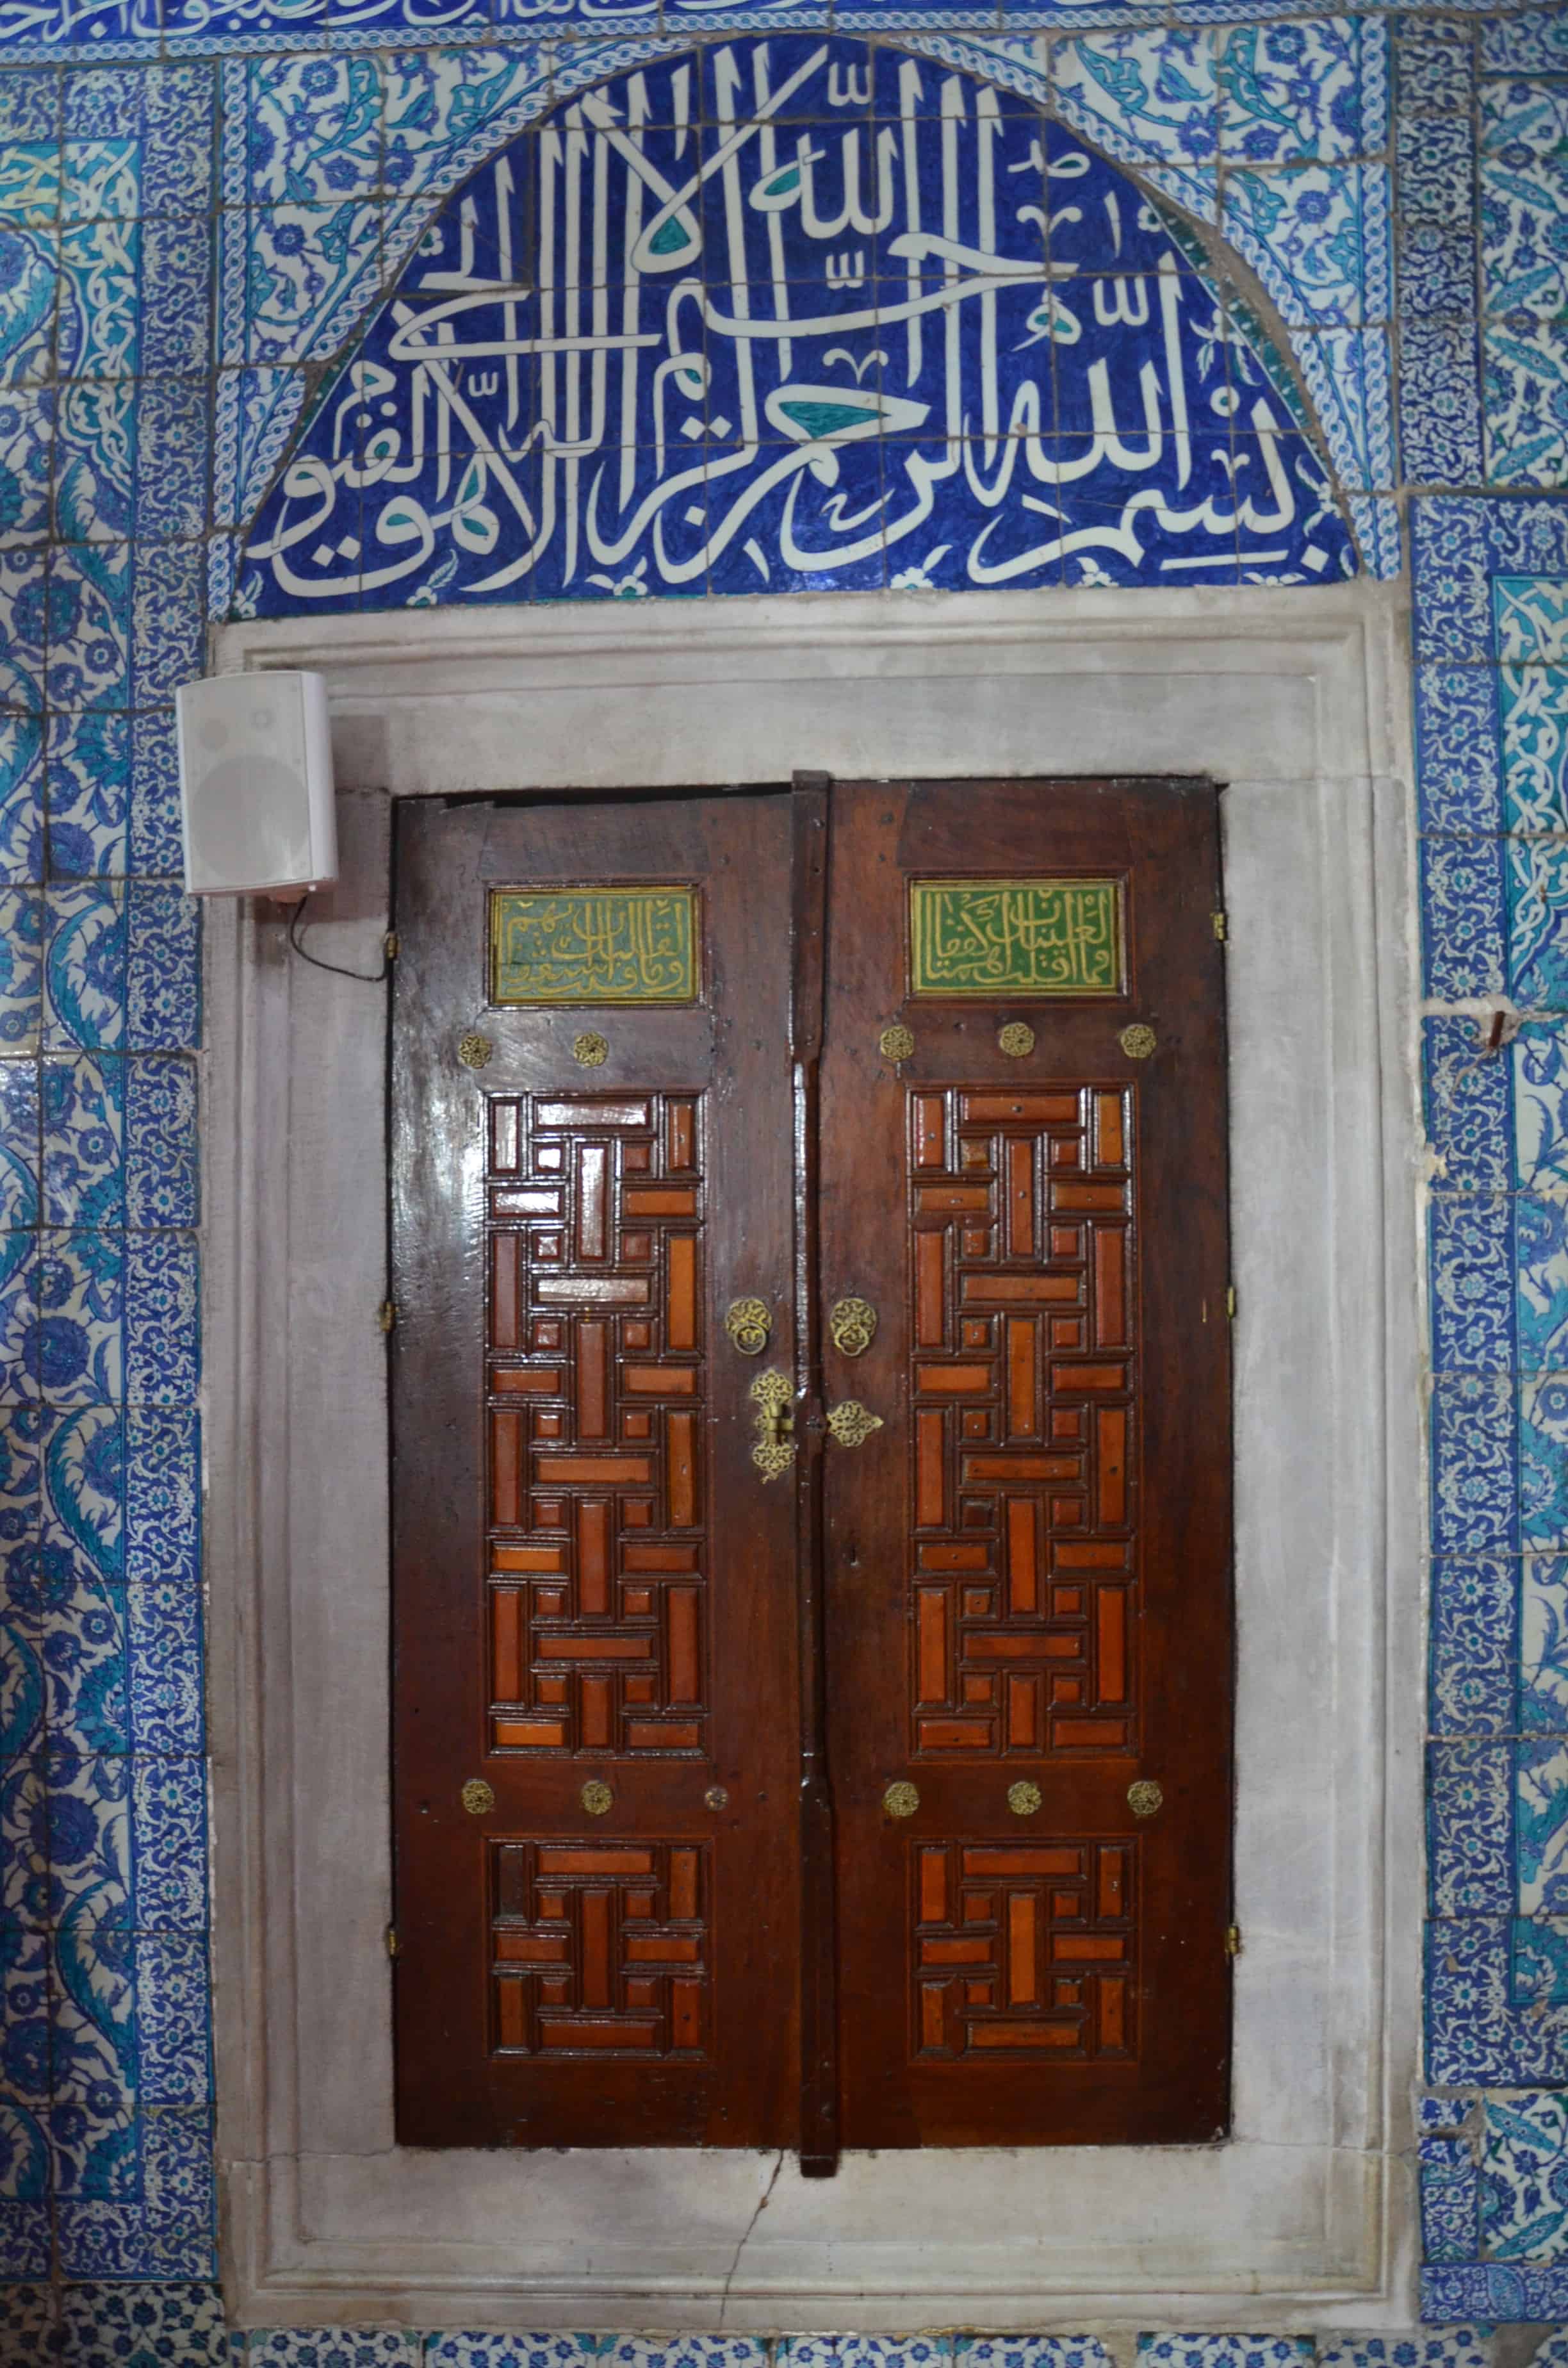 Tiled Mosque in Üsküdar, Istanbul, Turkey